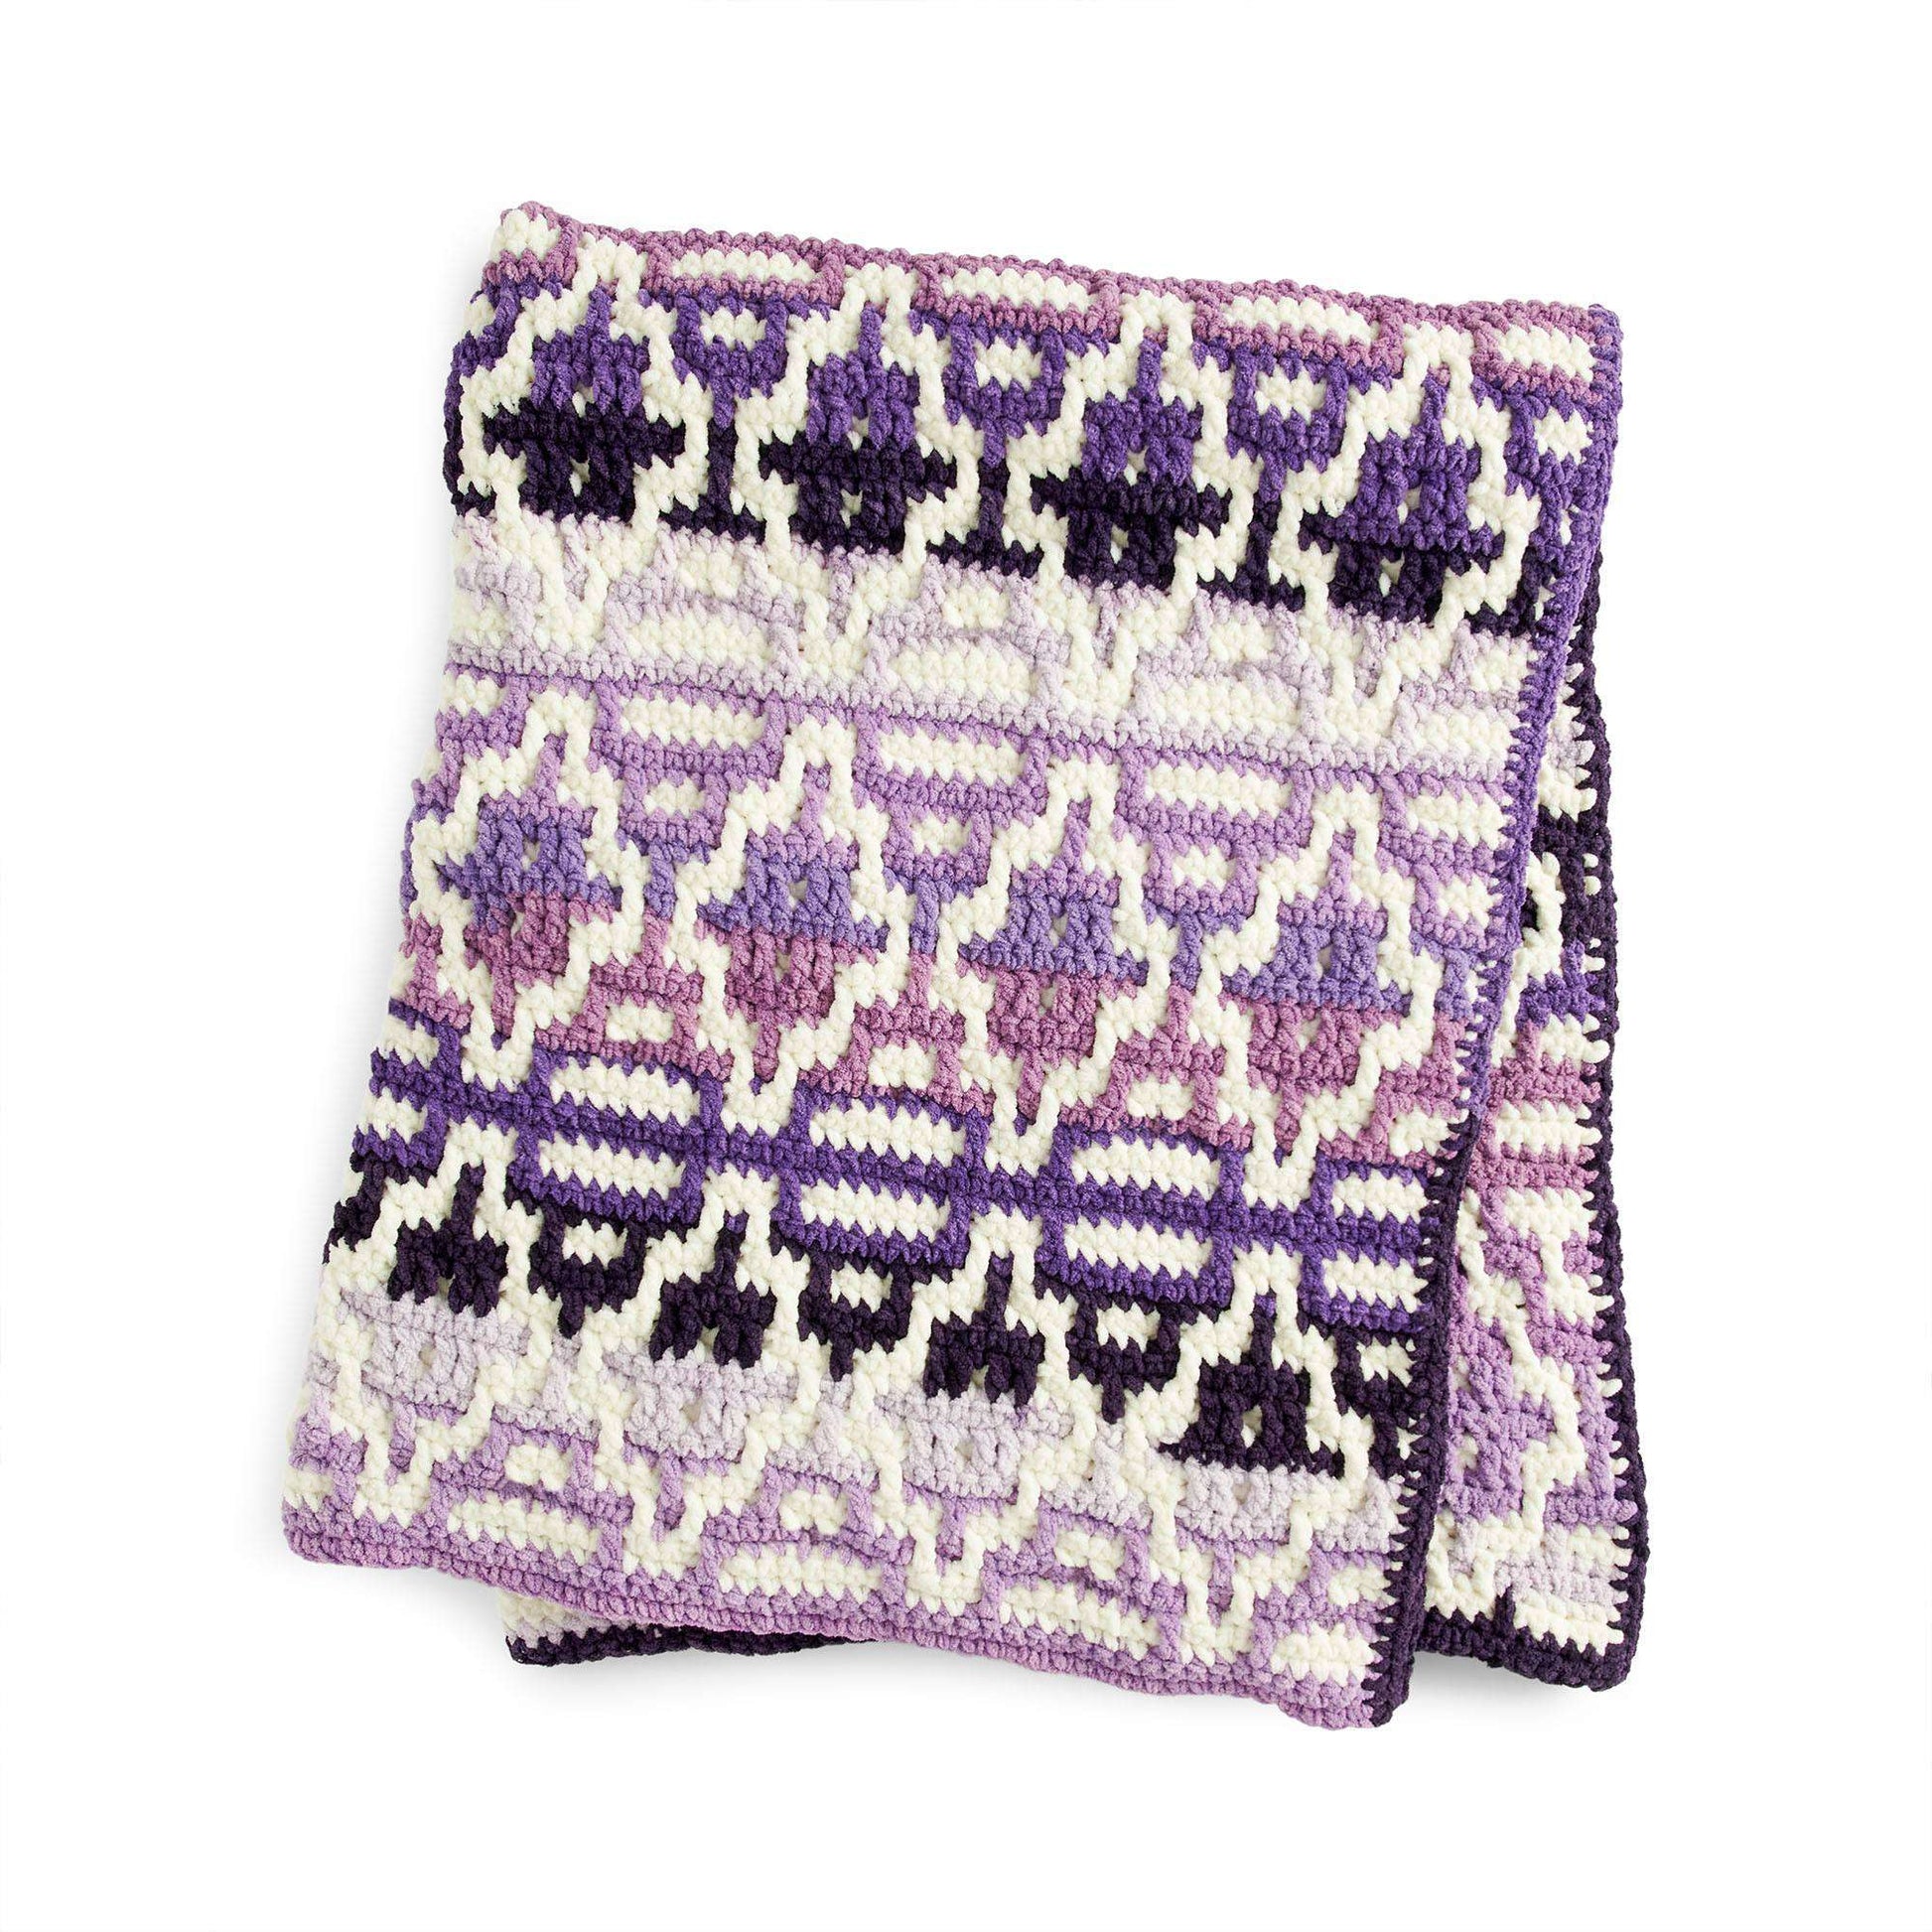 Free Bernat Mosaic Ombre Crochet Blanket Pattern